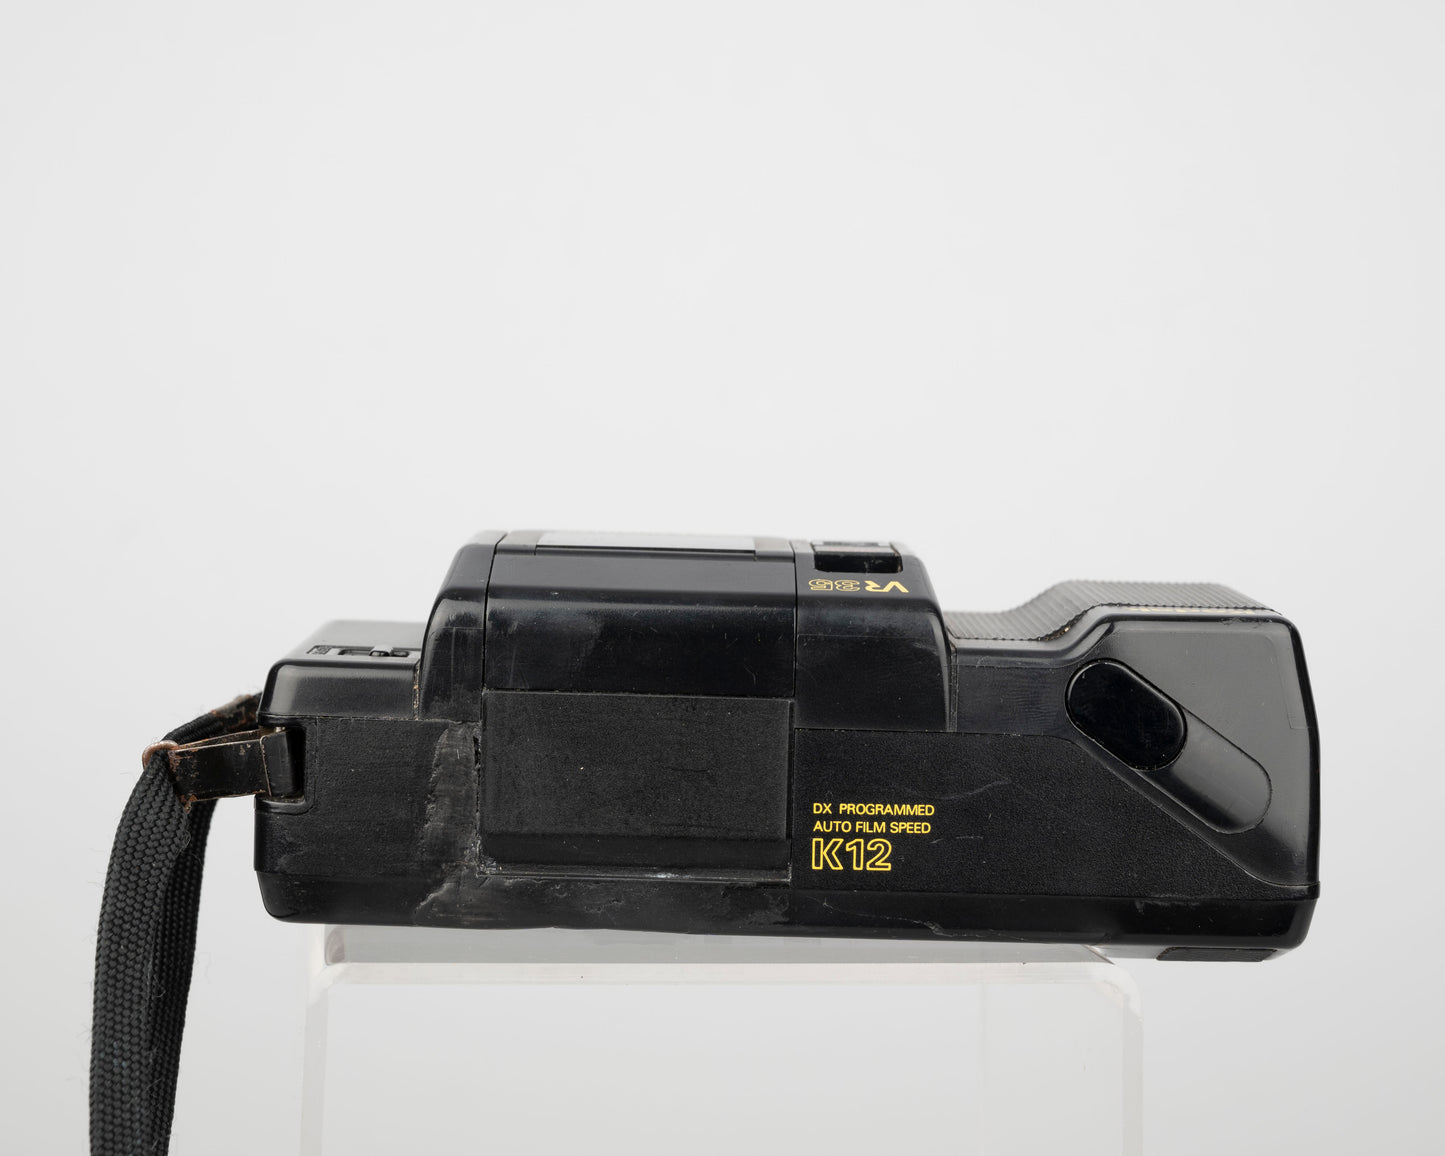 Appareil photo Kodak VR35 K12 à mise au point automatique 35 mm